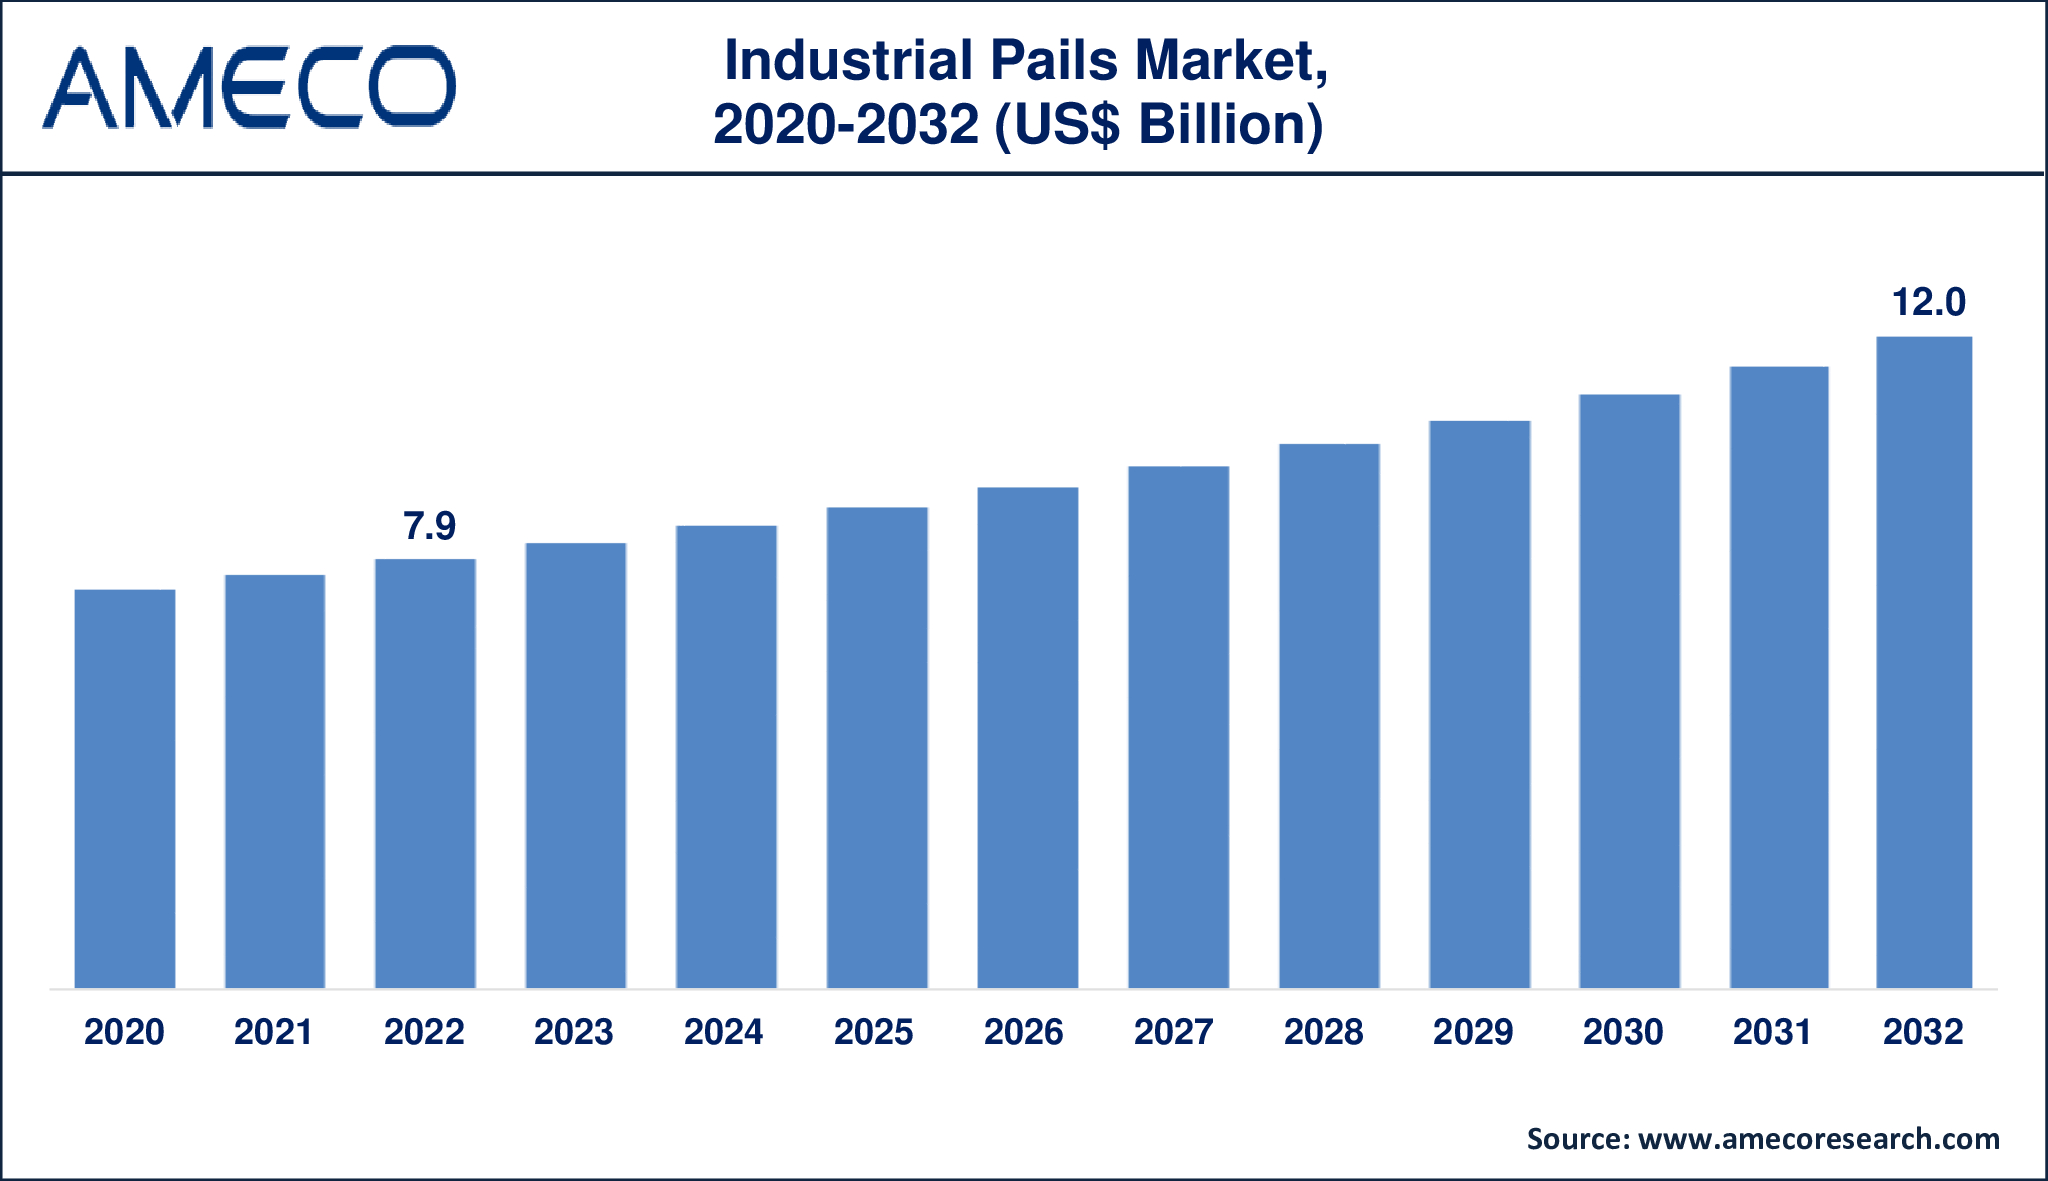 Industrial Pails Market Dynamics